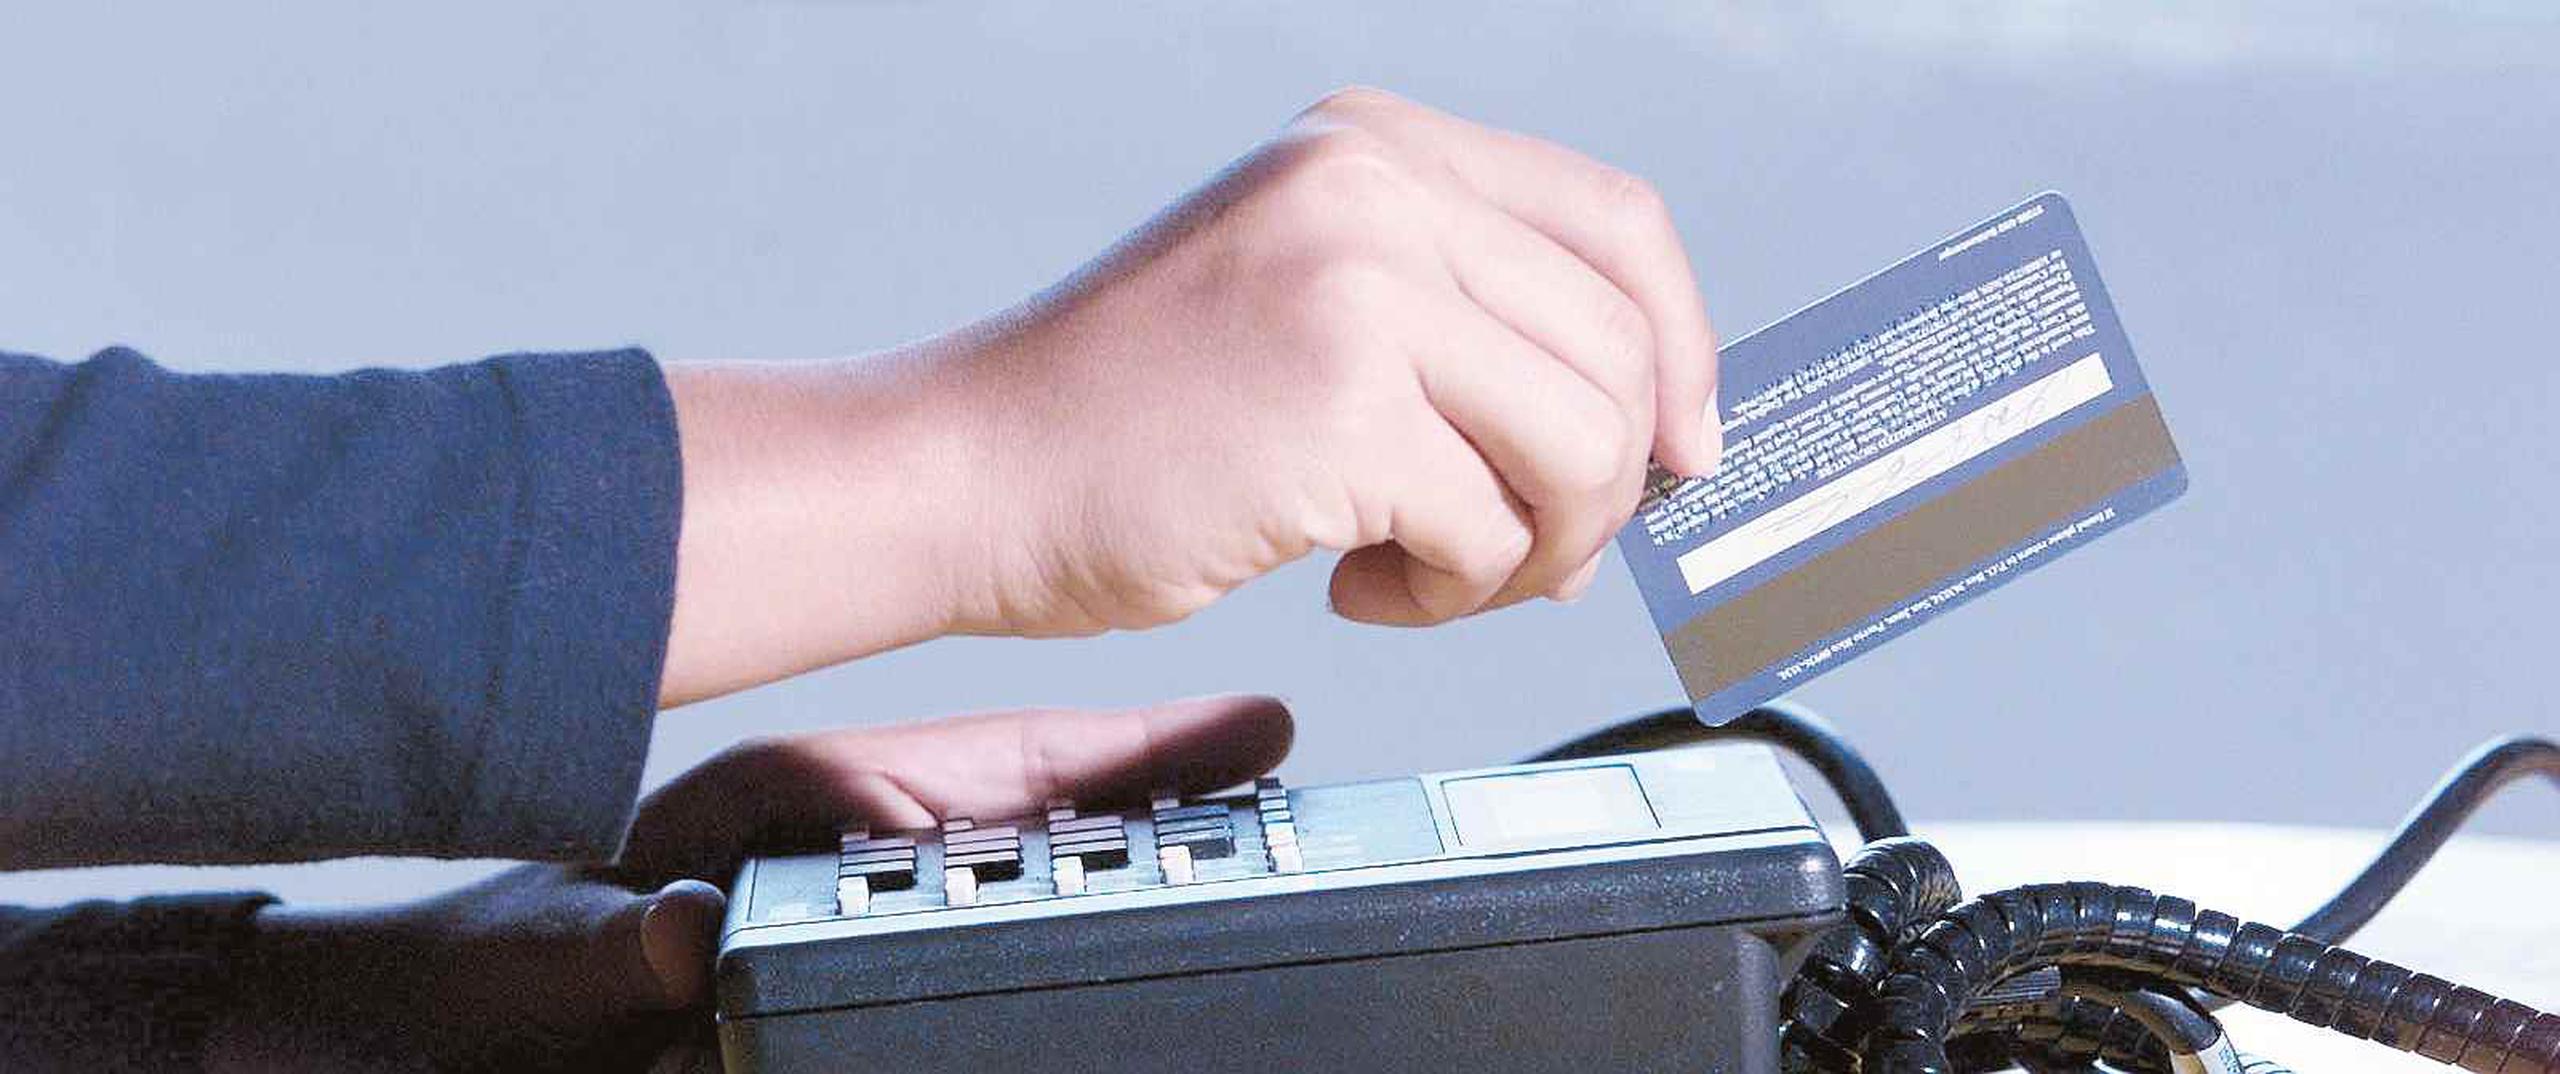 Si el comercio donde vas a pagar no dispone de un terminal inalámbrico (wireless), se recomienda mejor pagar en la caja registradora para evitar una clonación de tarjeta de crédito. (Archivo / GFR Media)